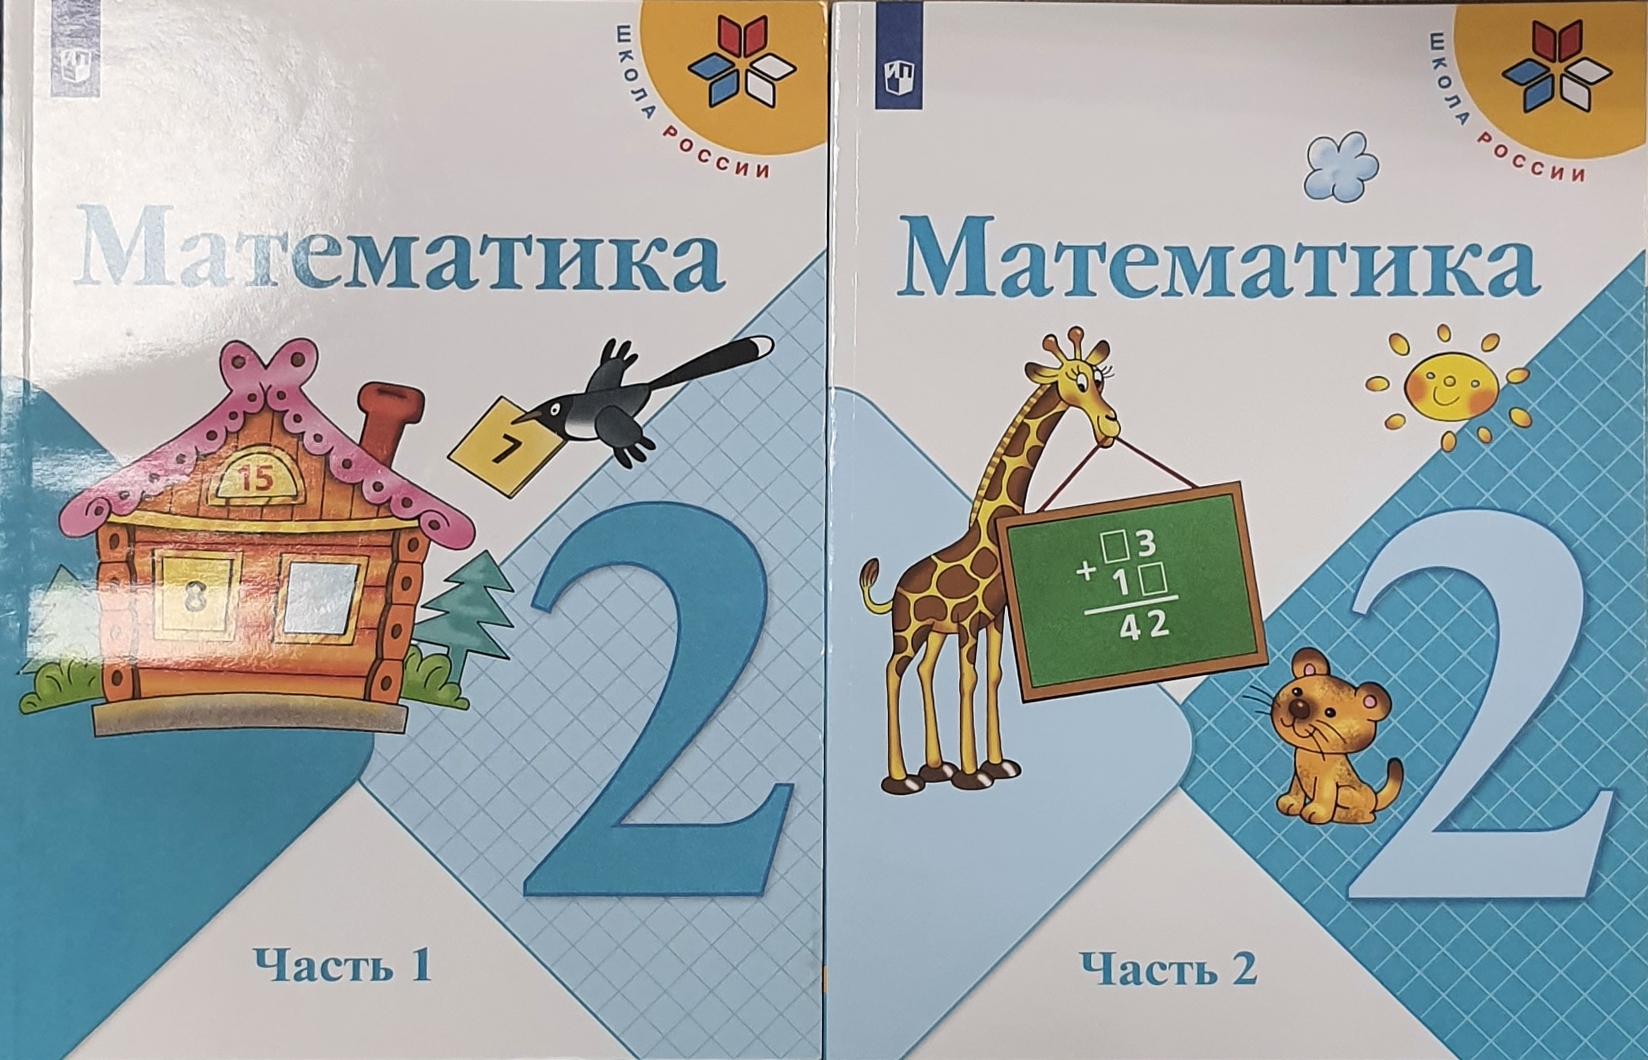 Математика 2 кл 2 часть стр 51. Учебник "математика" школа России 2 класс 1 и 2 части.